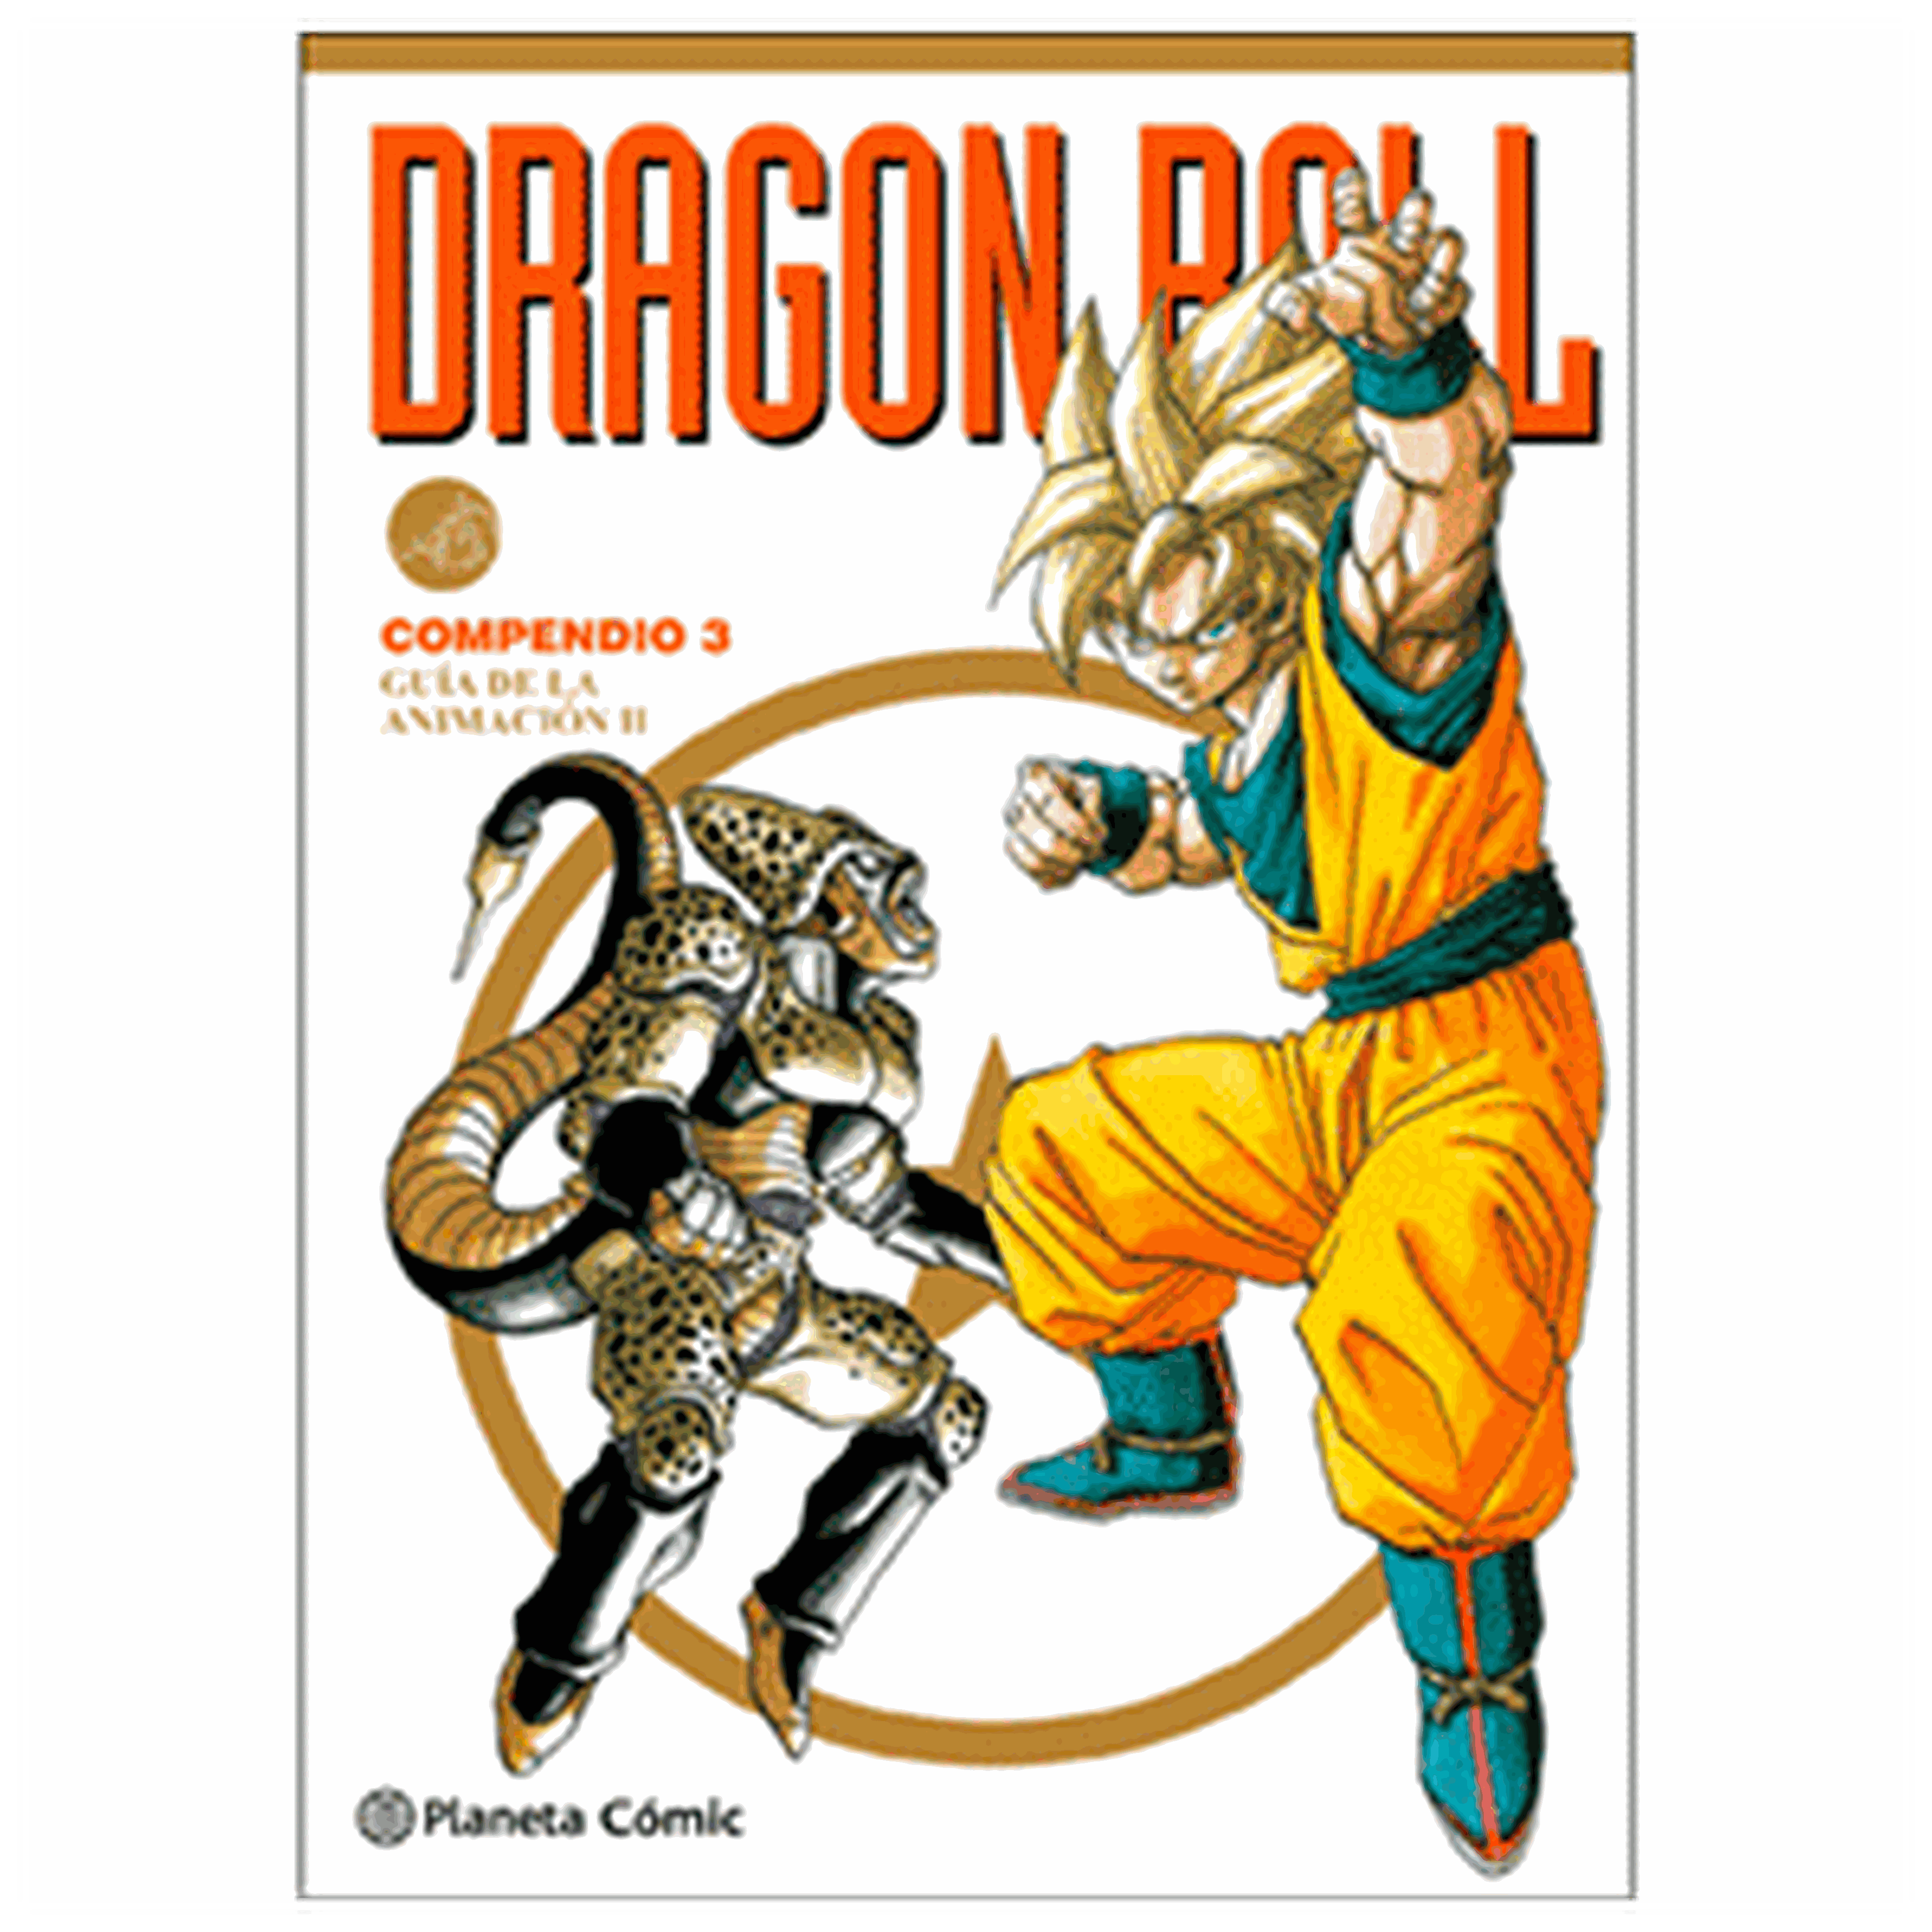 Game Bazar Dragon Ball compendio 3